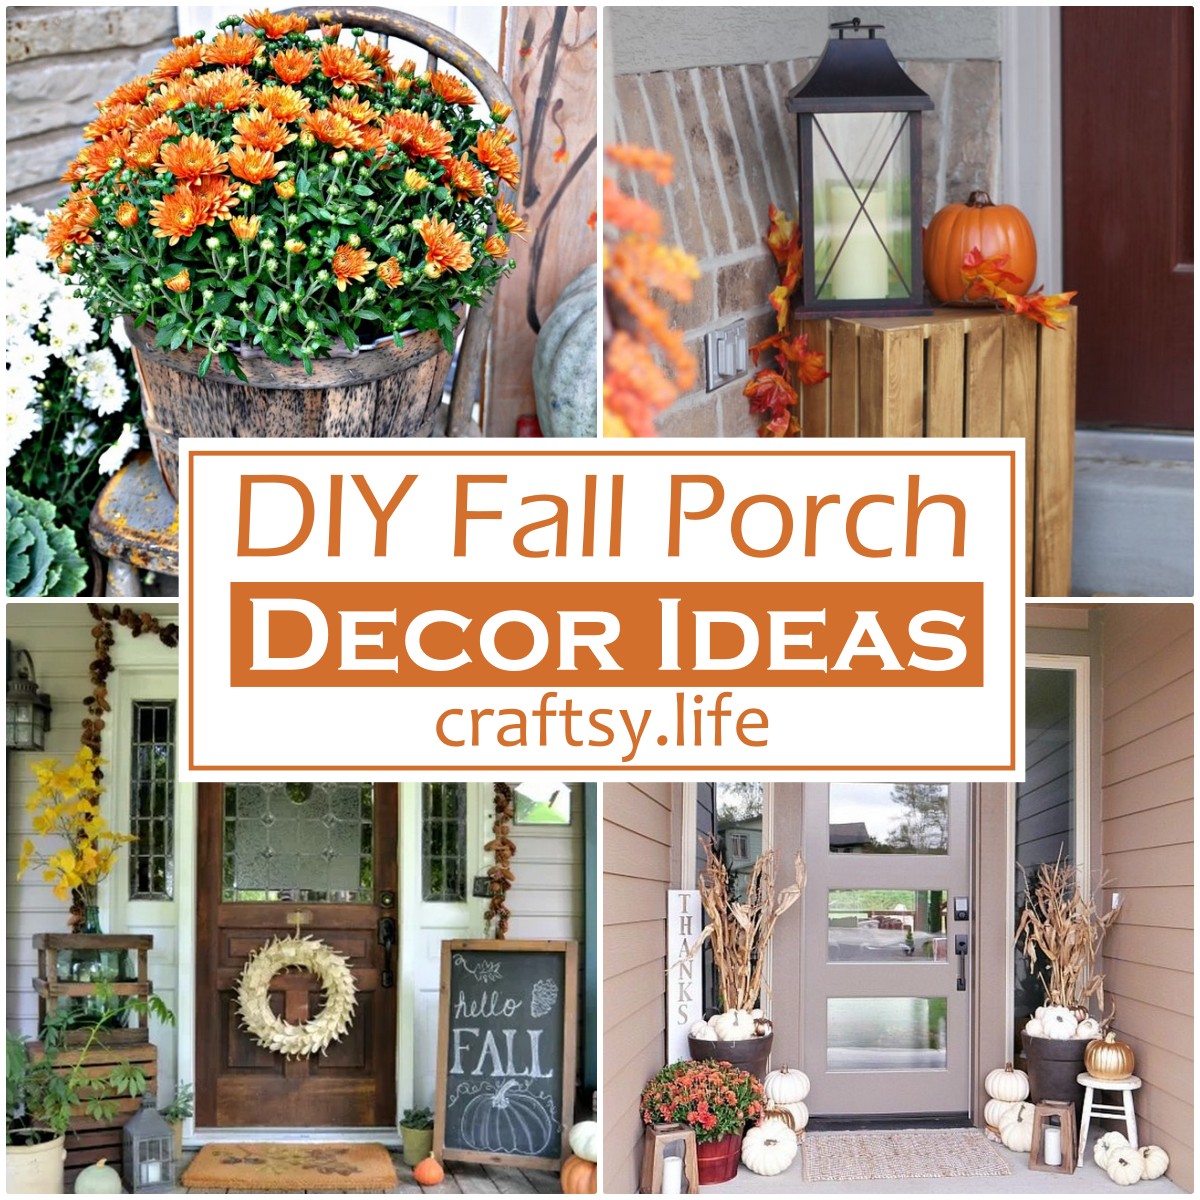 DIY Fall Porch Decor Ideas